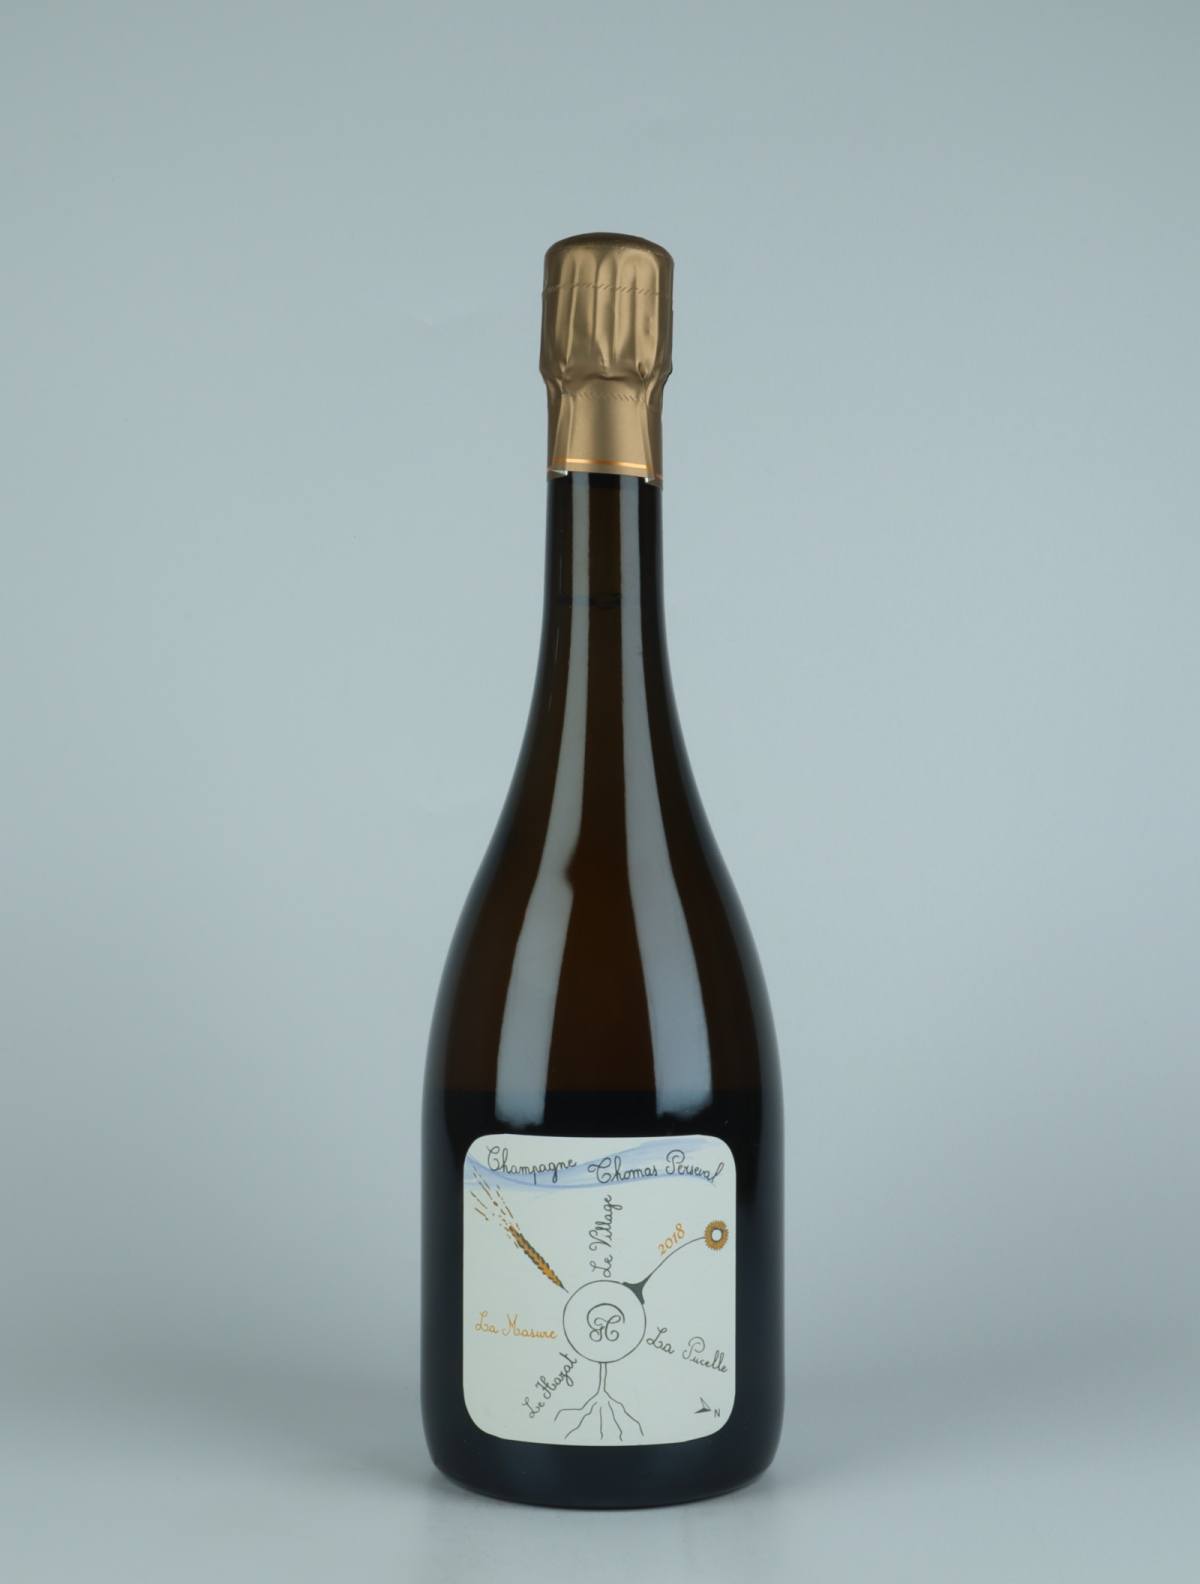 En flaske 2018 Chamery 1. Cru - La Masure Mousserende fra Thomas Perseval, Champagne i Frankrig